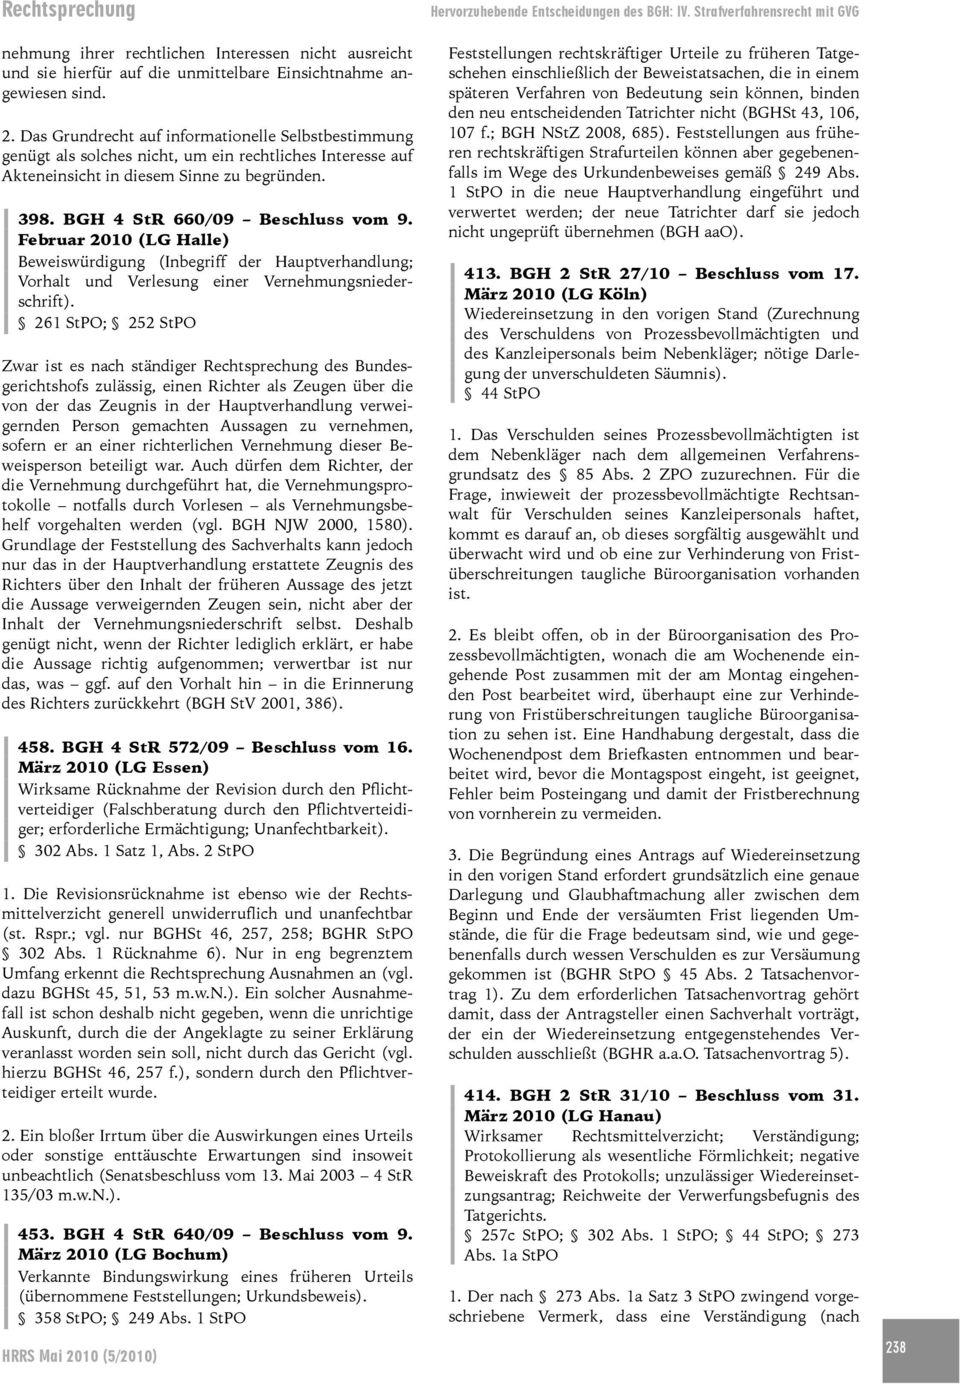 Februar 2010 (LG Halle) Beweiswürdigung (Inbegriff der Hauptverhandlung; Vorhalt und Verlesung einer Vernehmungsniederschrift).